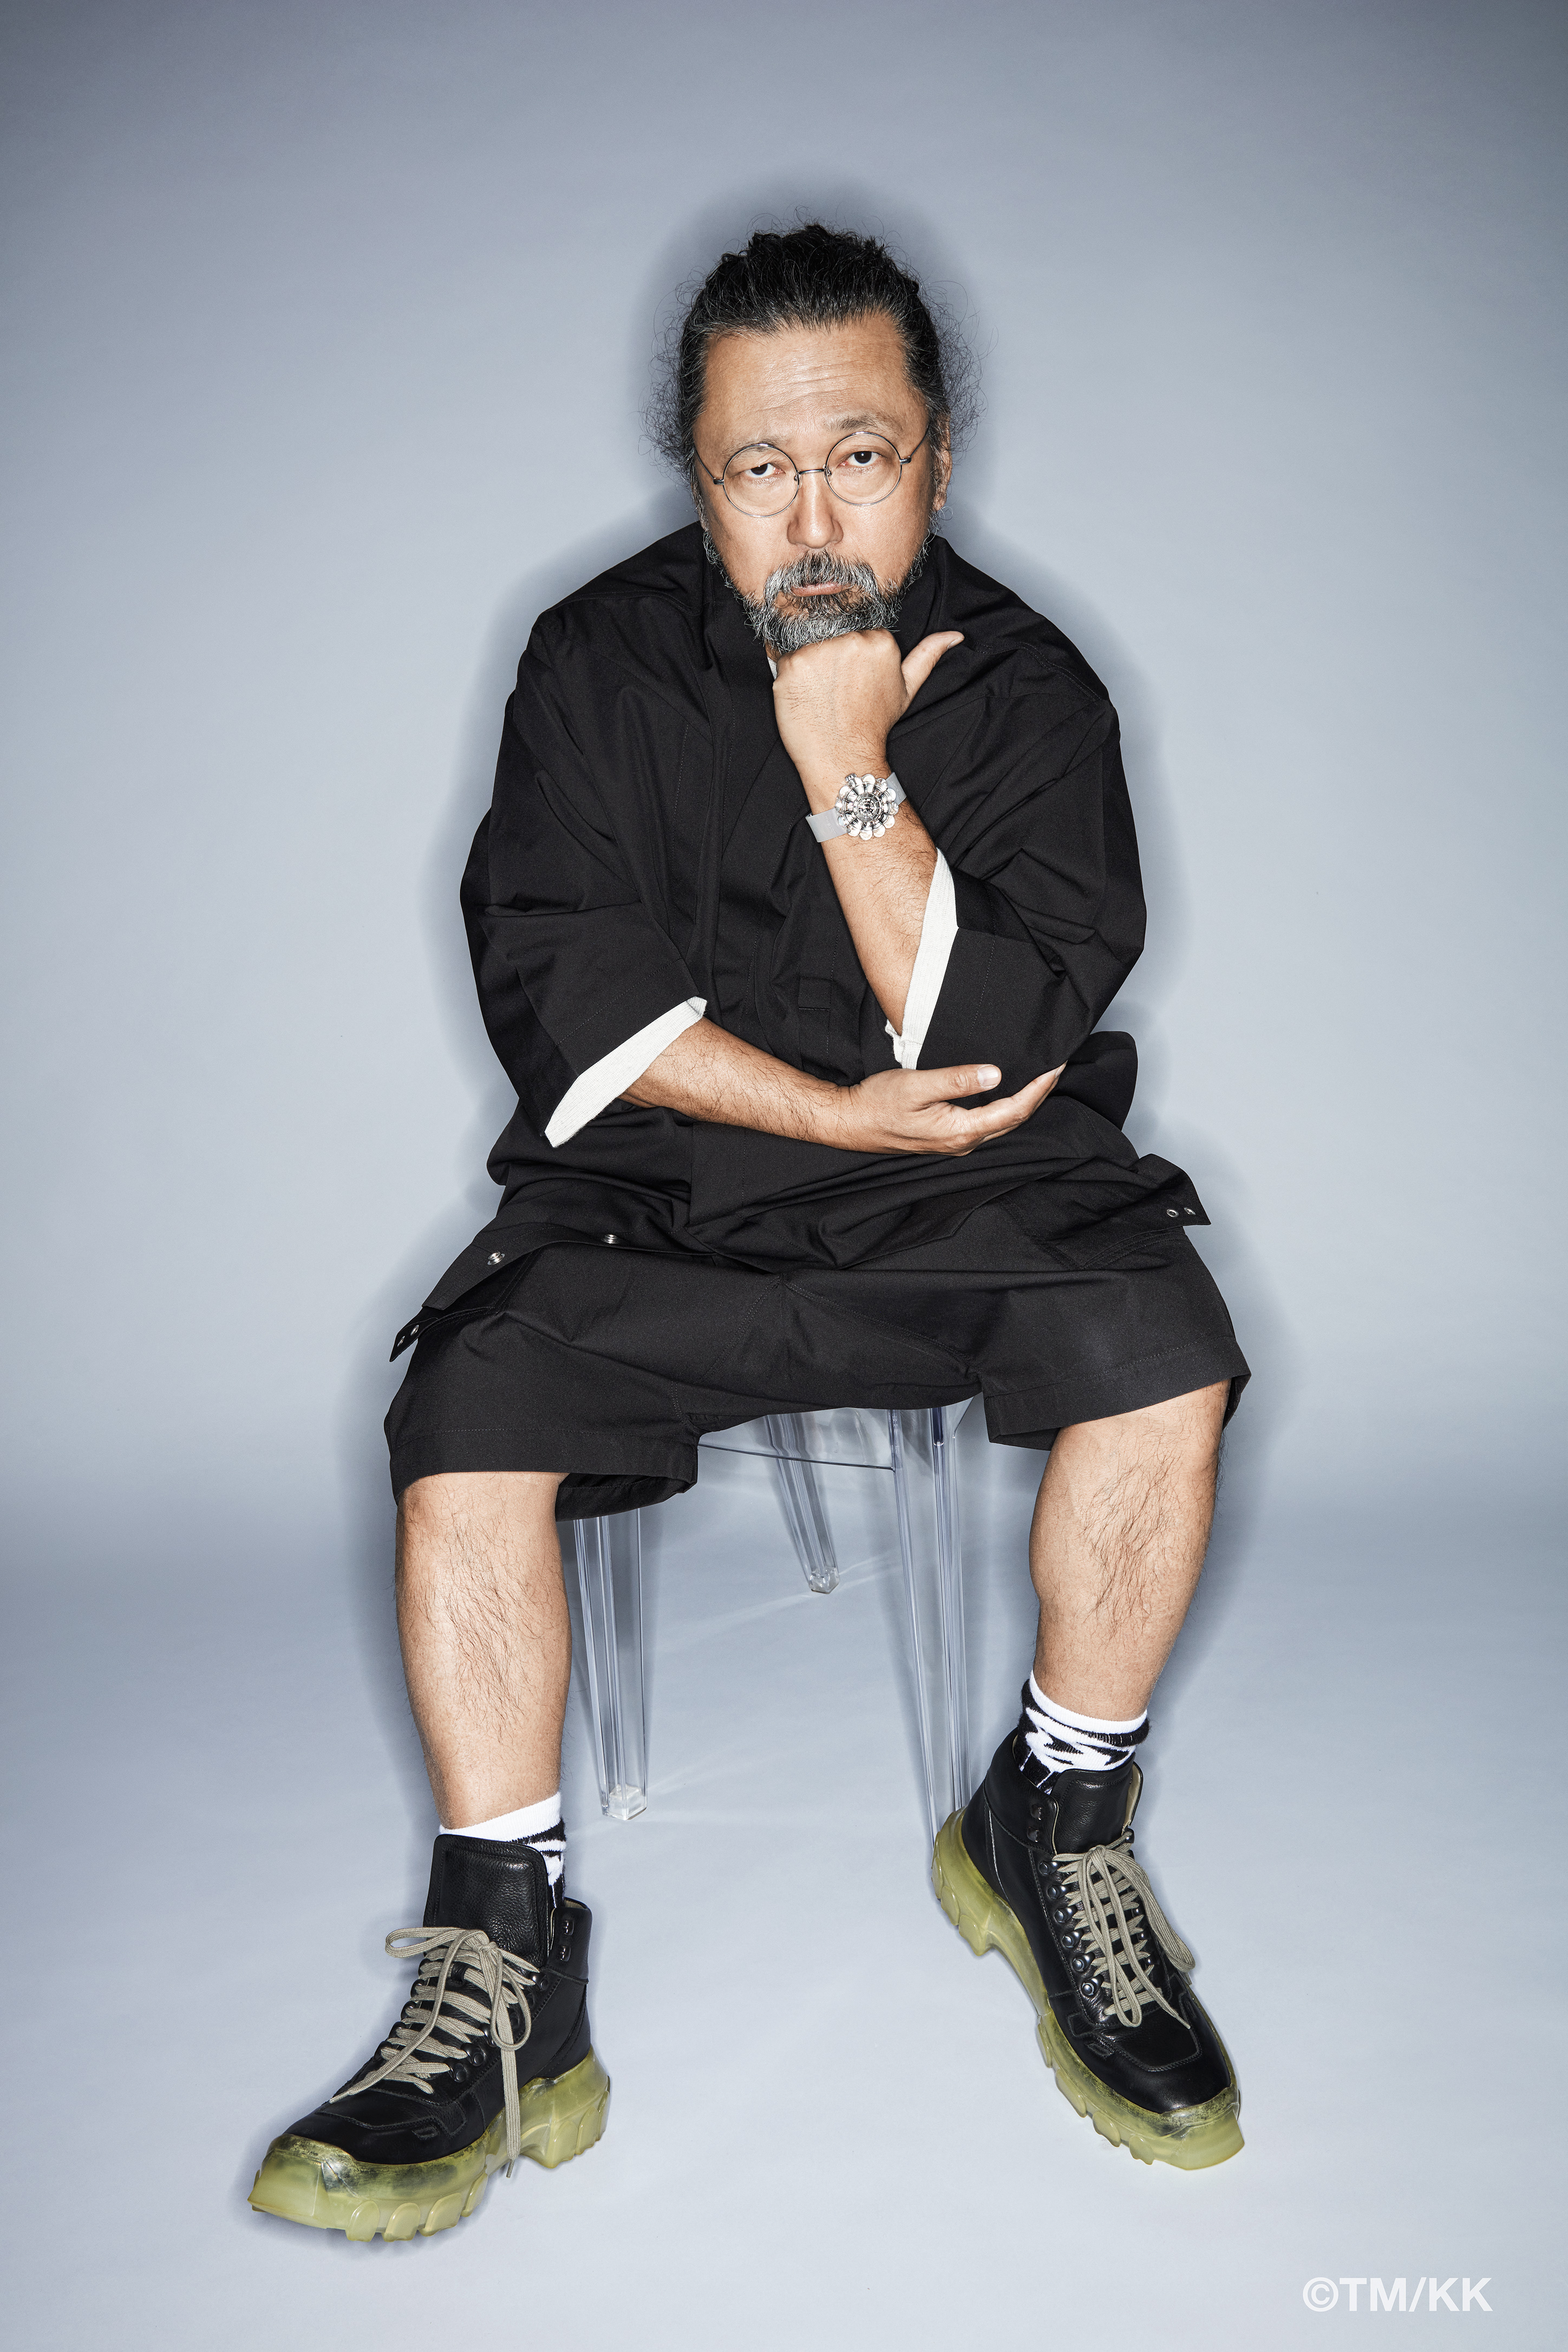 Takashi Murakami wearing the HUBLOT MP-15